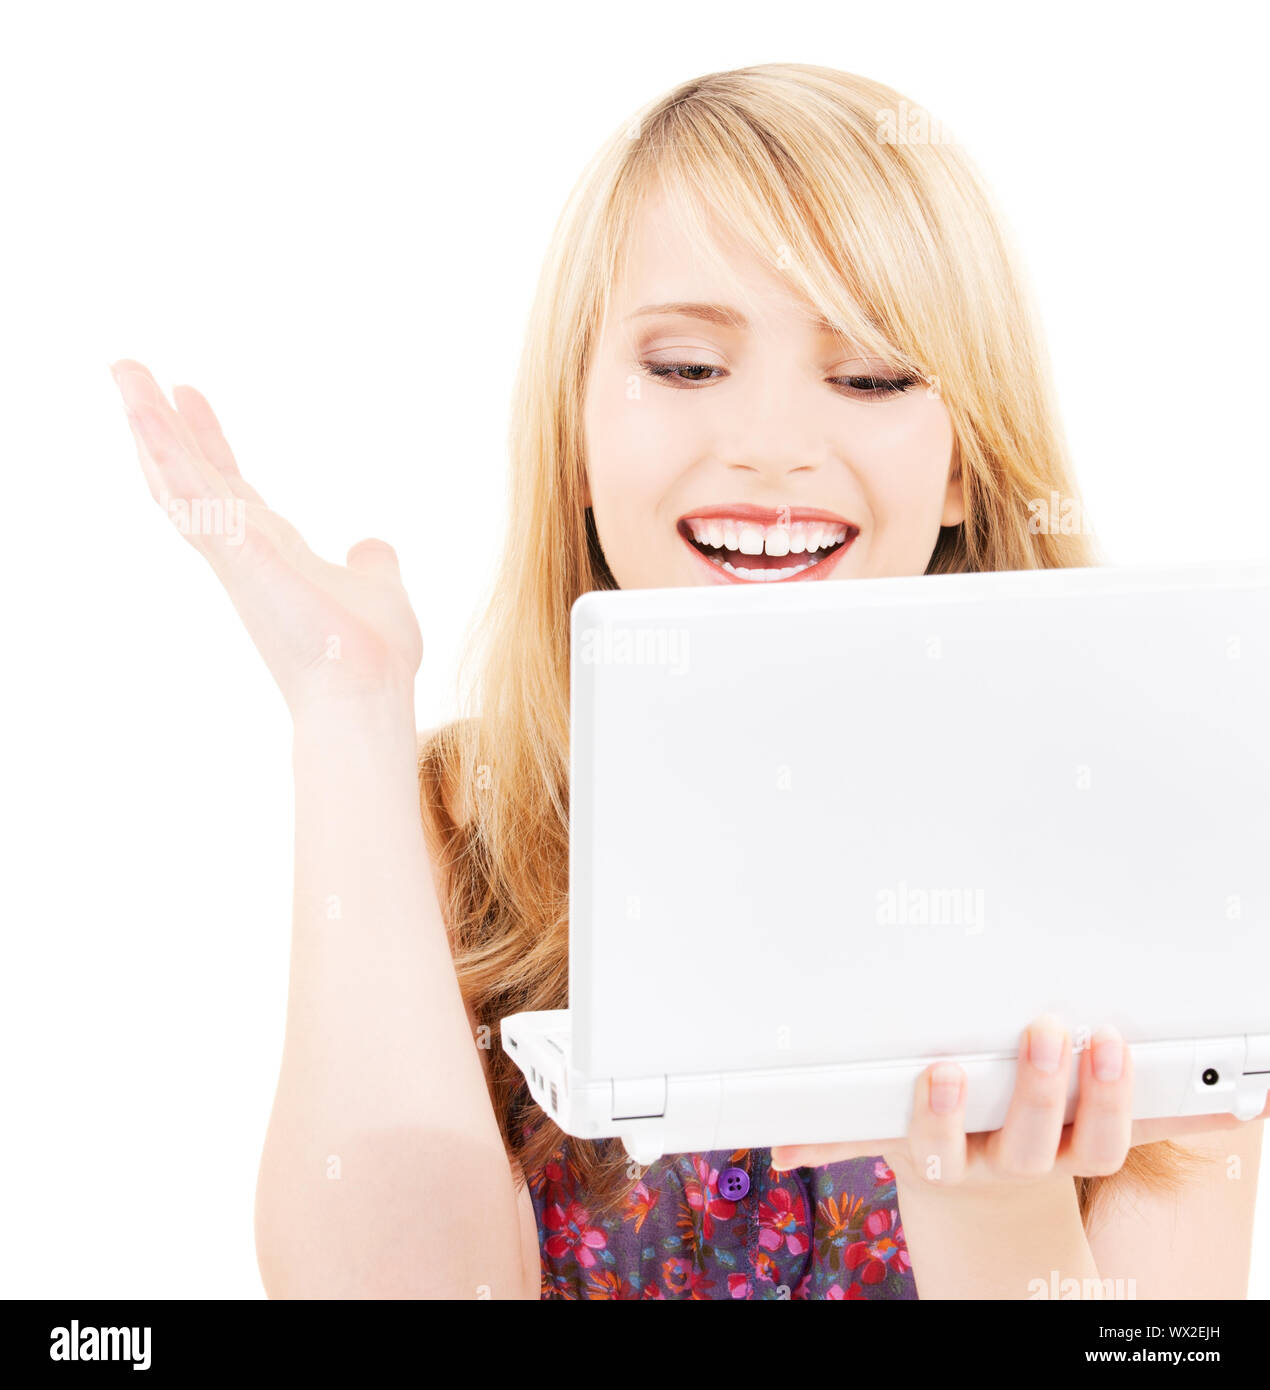 Ragazza adolescente con computer portatile Foto Stock